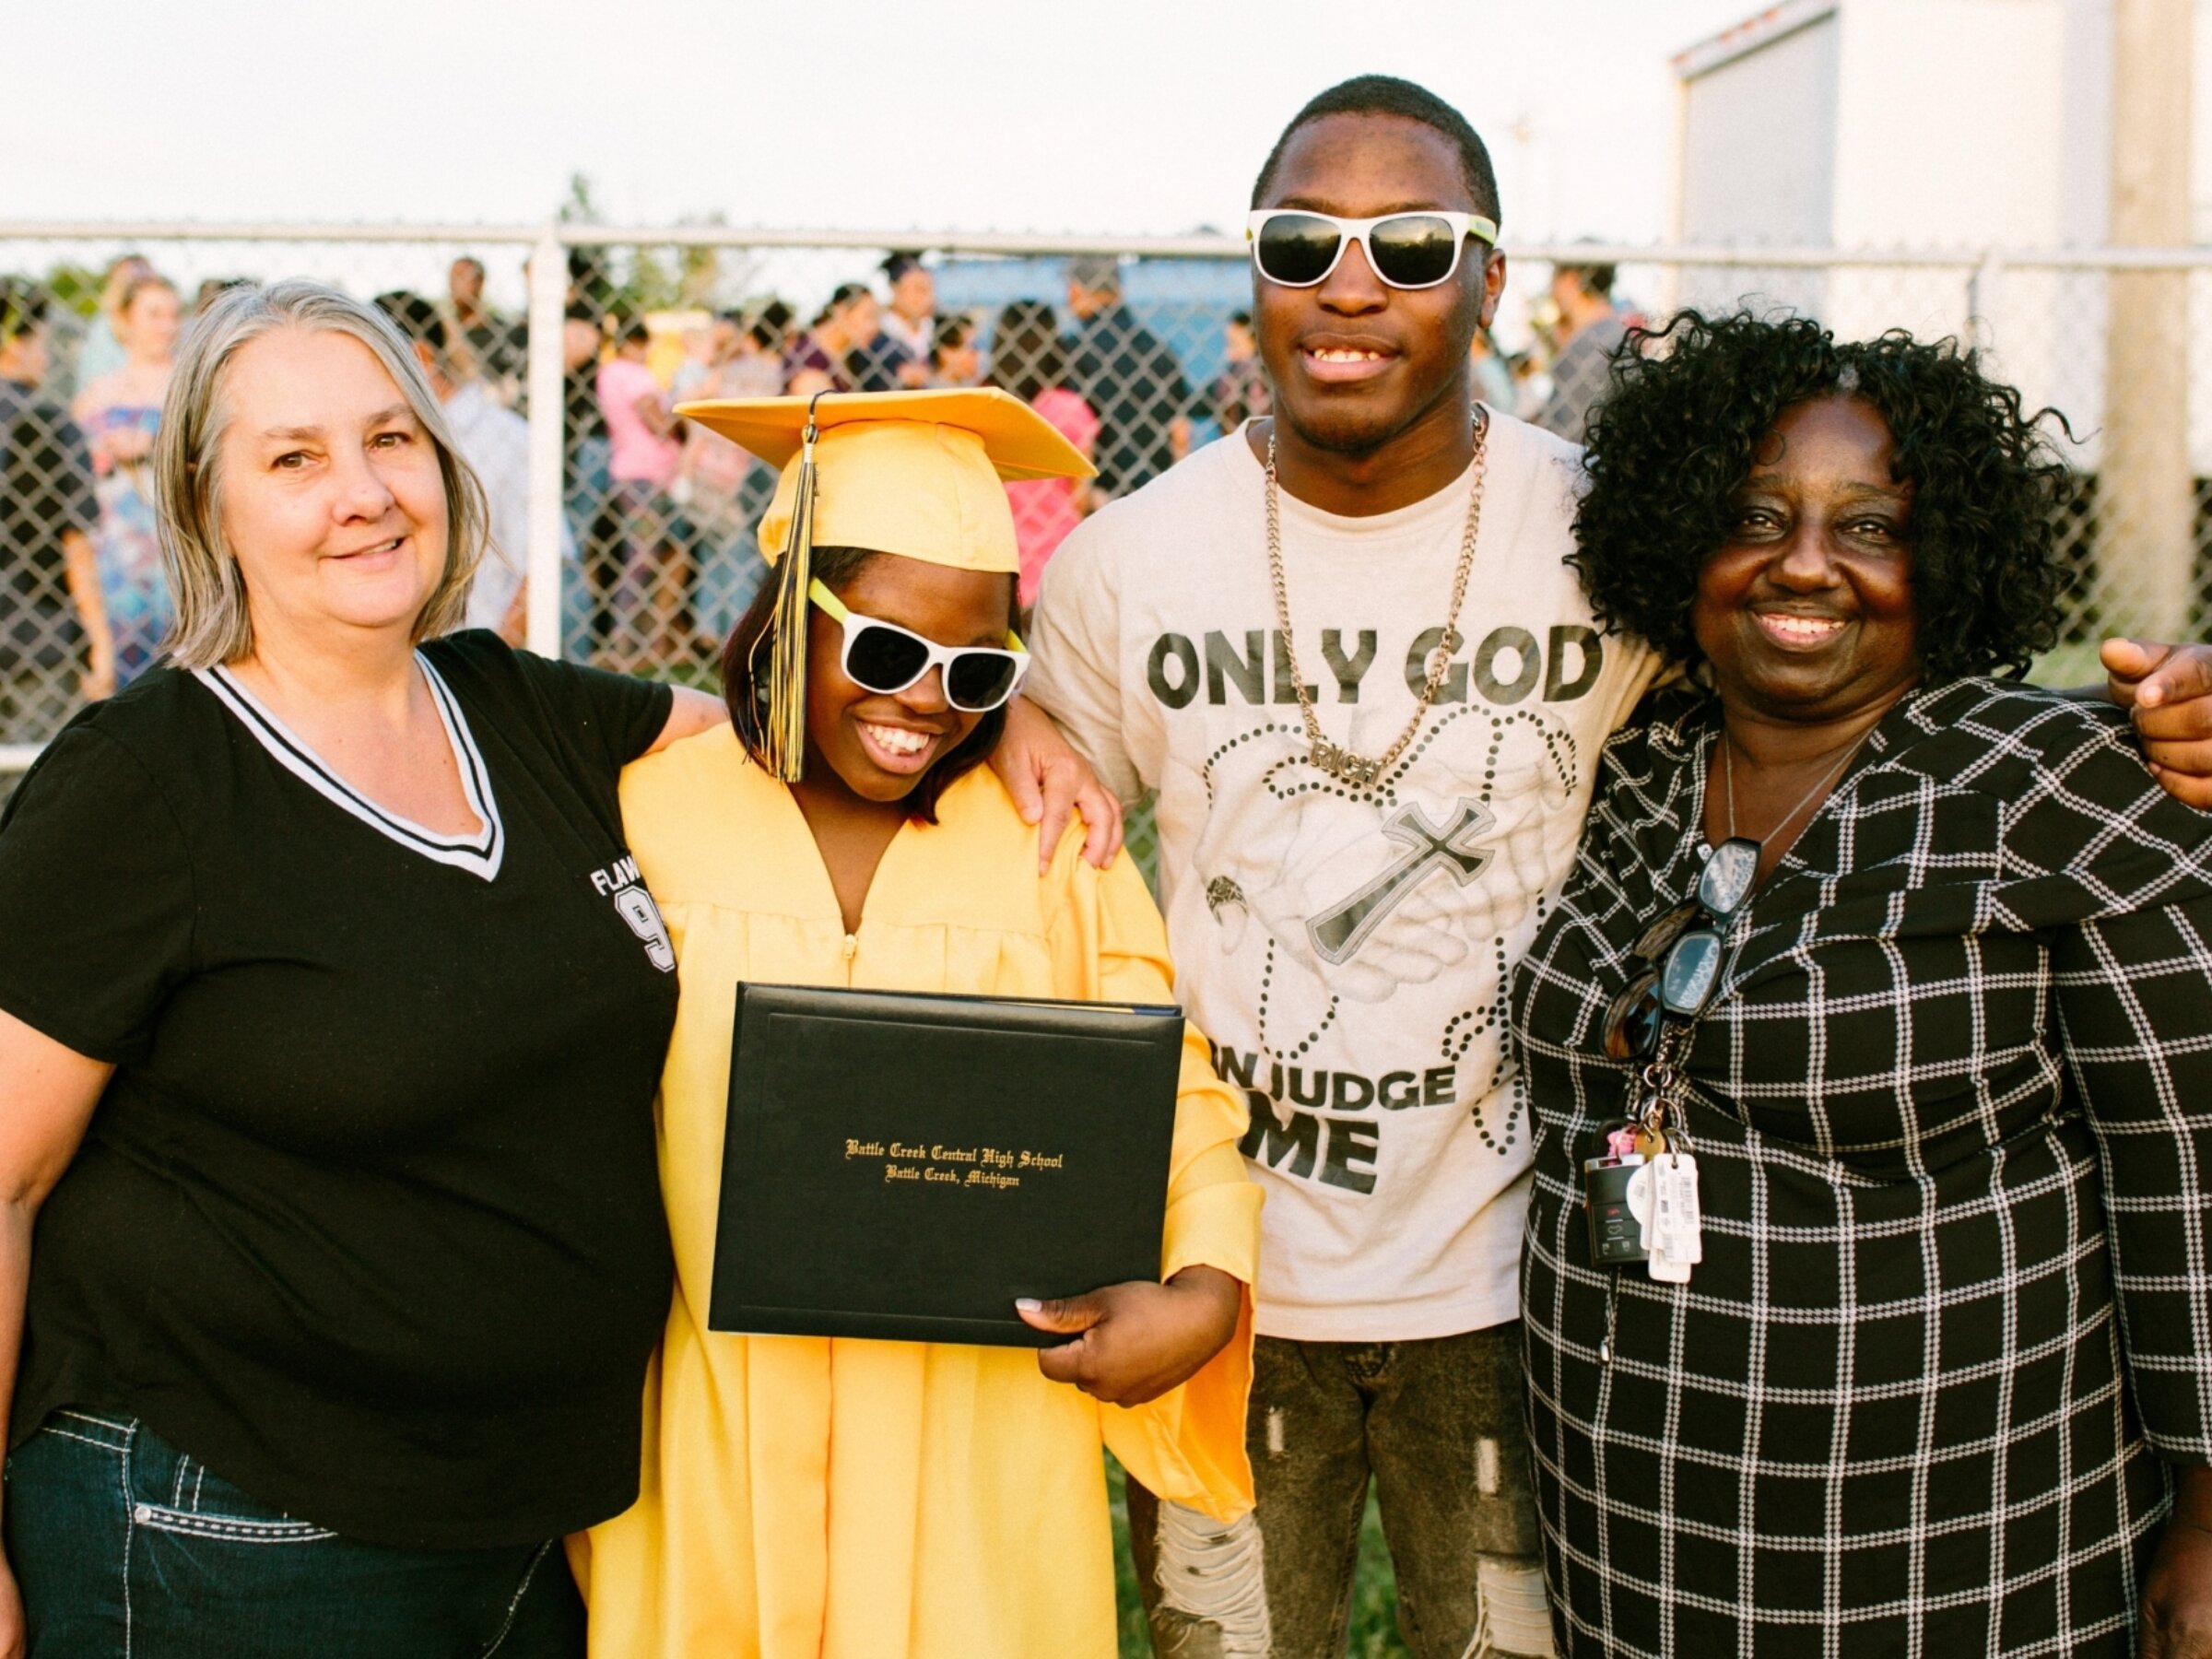 BCPS family celebrates their child's graduation